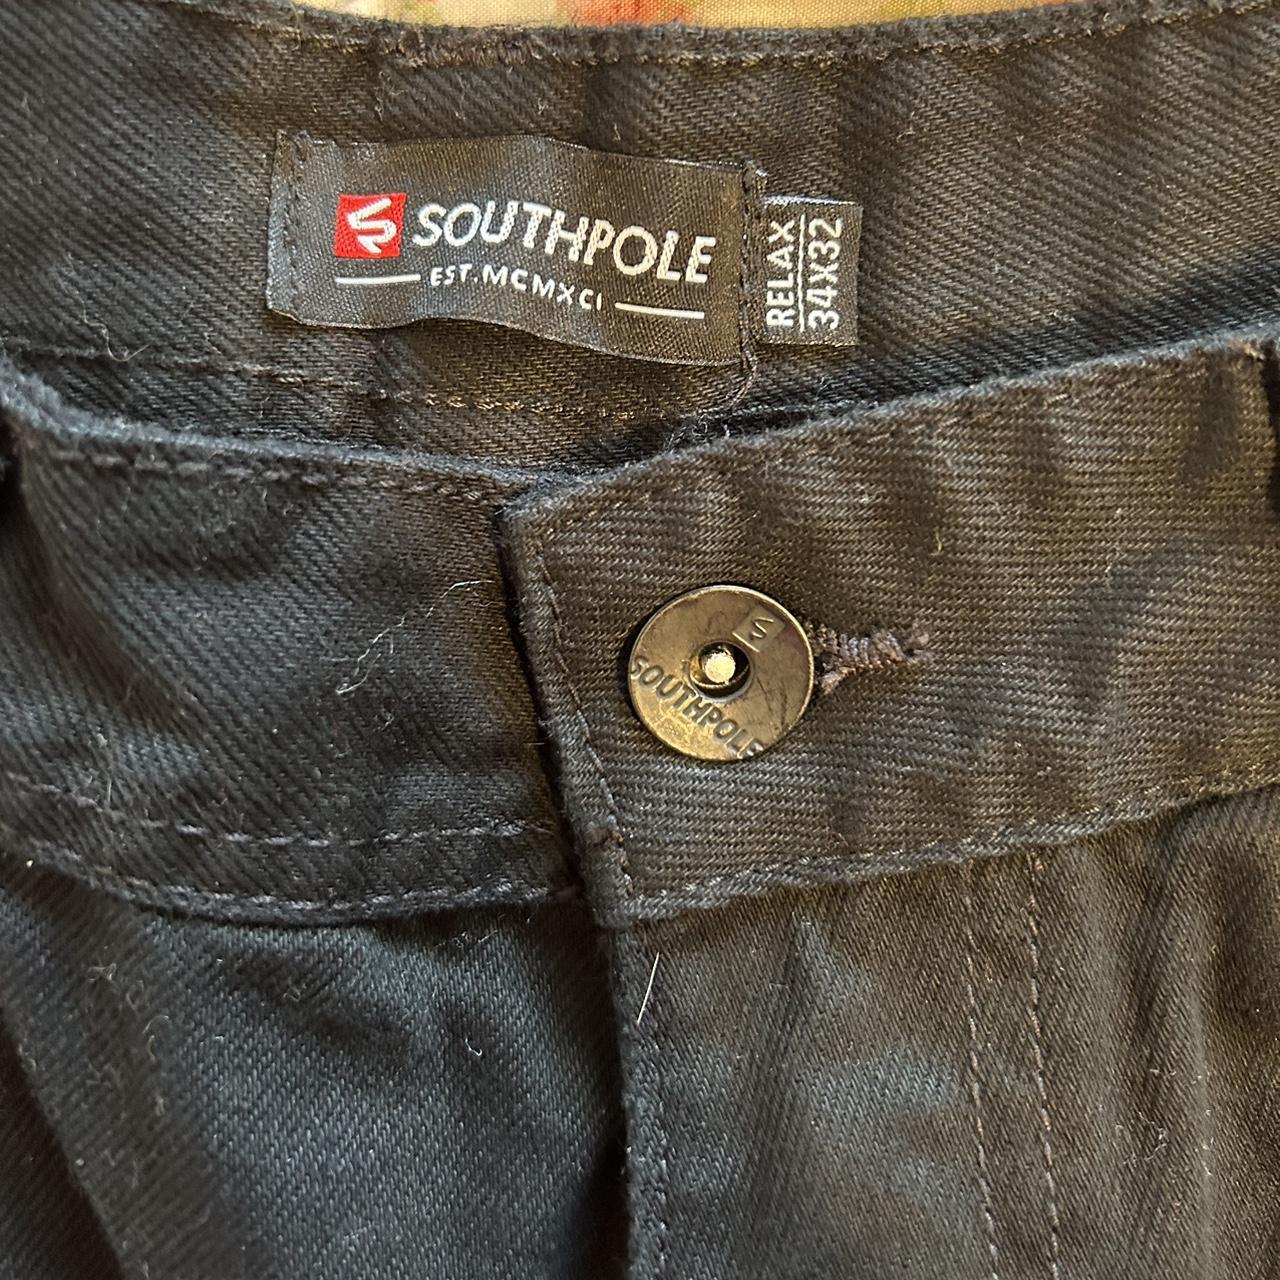 black southpole straight leg jeans 🌸size... - Depop